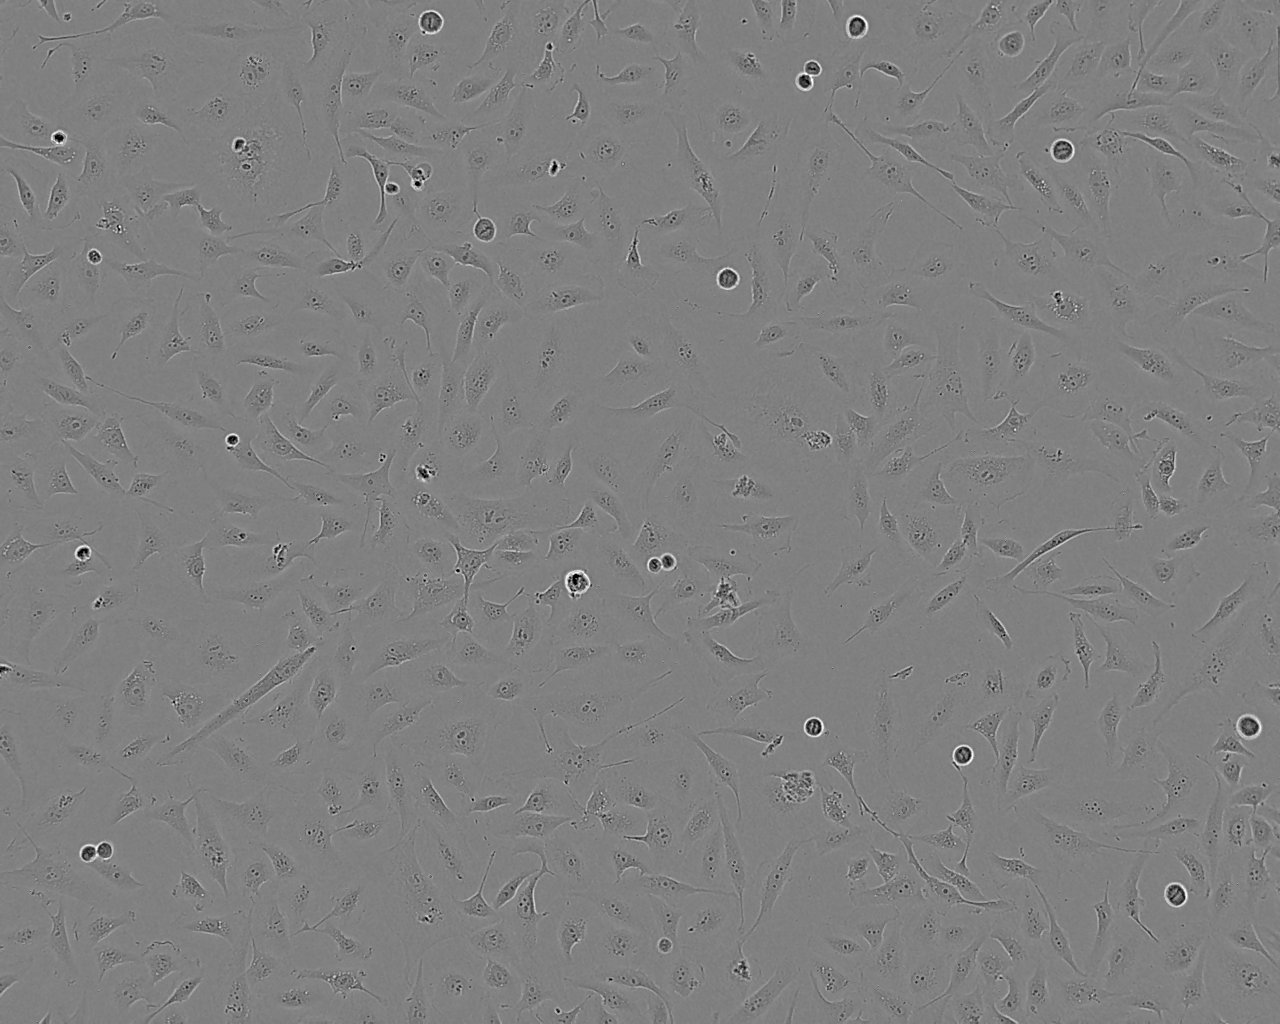 NR8383 Thawing大鼠肺泡巨噬细胞系